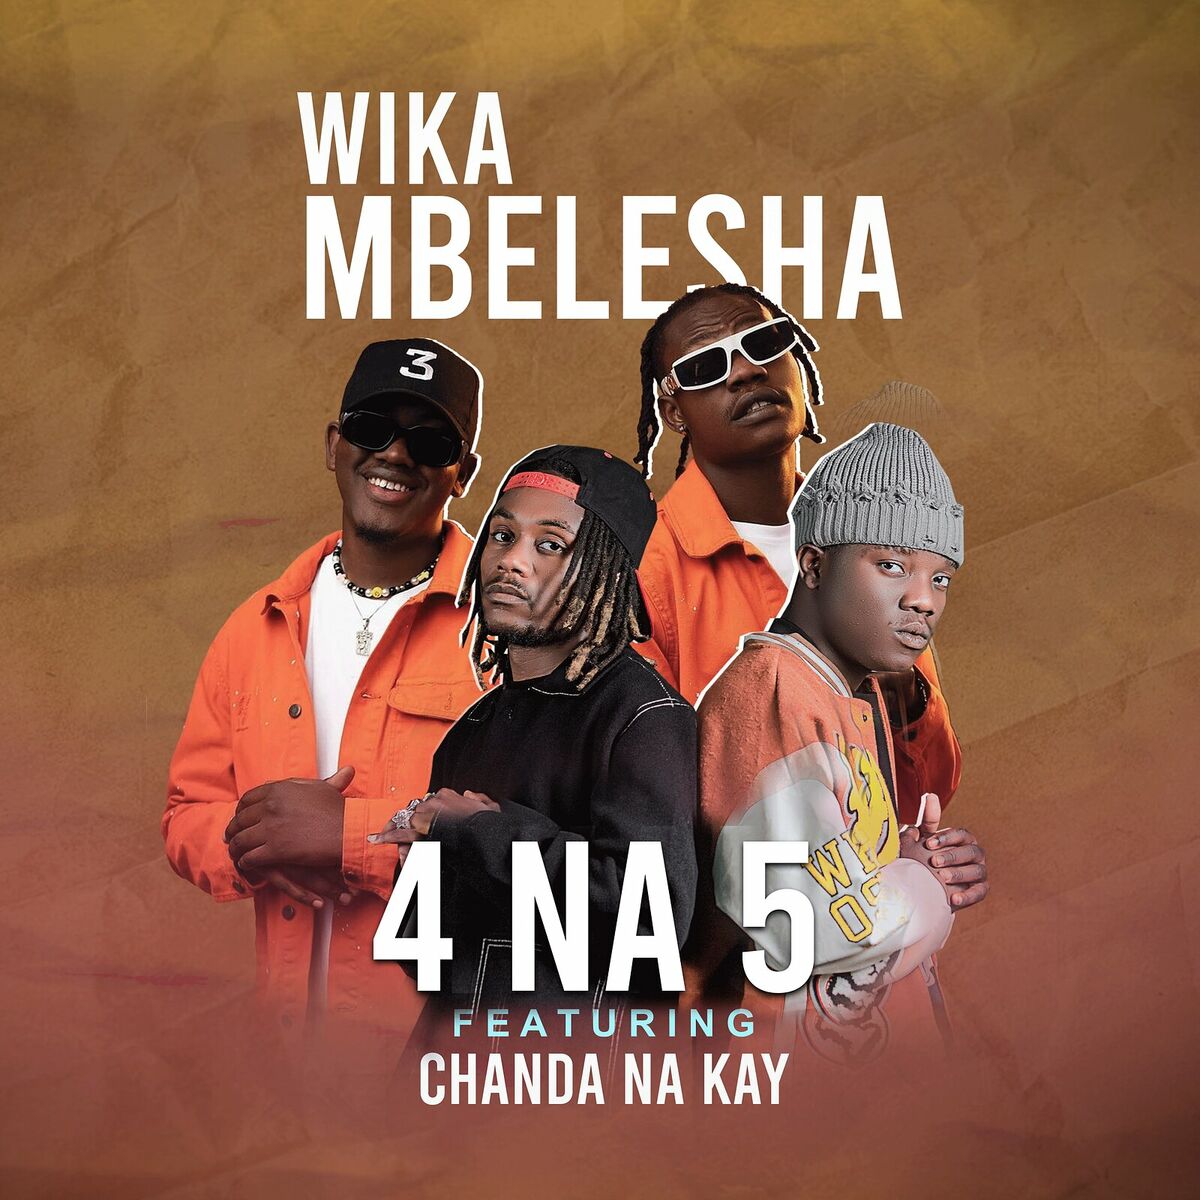 4 Na 5 ft. Chanda Na Kay - Wikambelesha